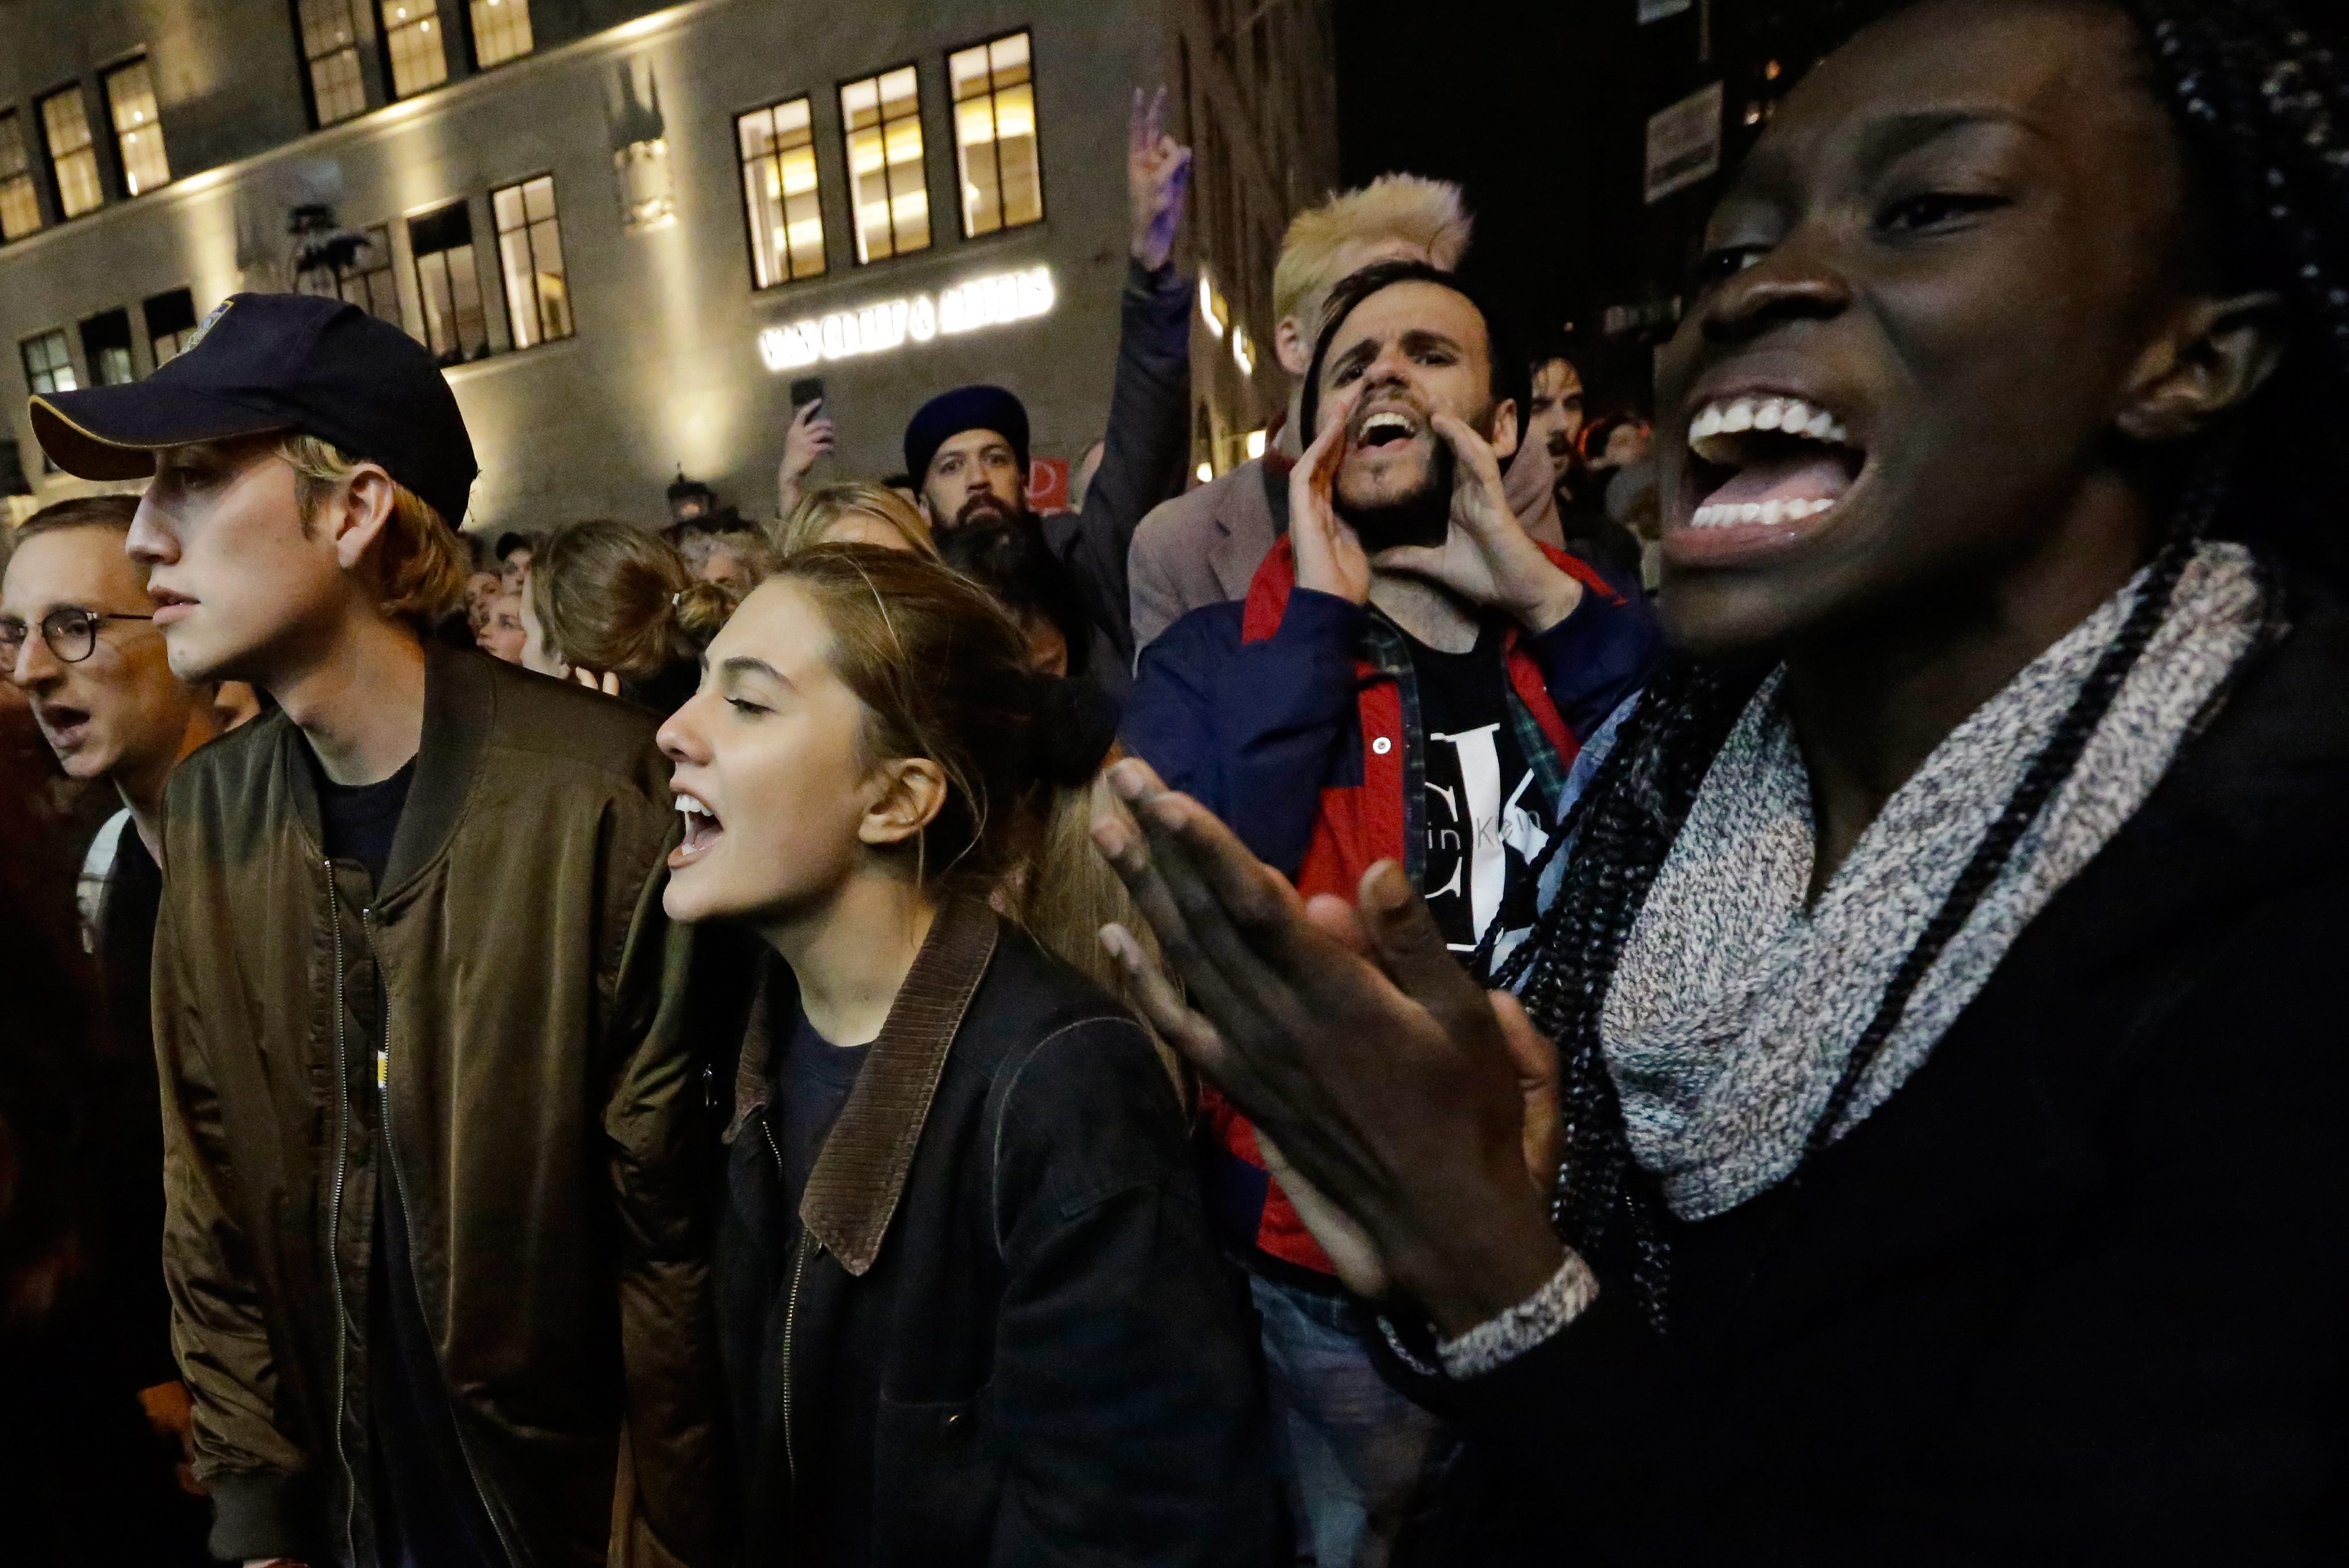 Хората излязоха по улиците на редица градове, за да протестират срещу новия президент. Демонстрации имаше по улиците на Ню Йорк, Филаделфия, Чикаго, Бостън, Сиатъл, Портланд, Сан Франциско и Вашингтон.